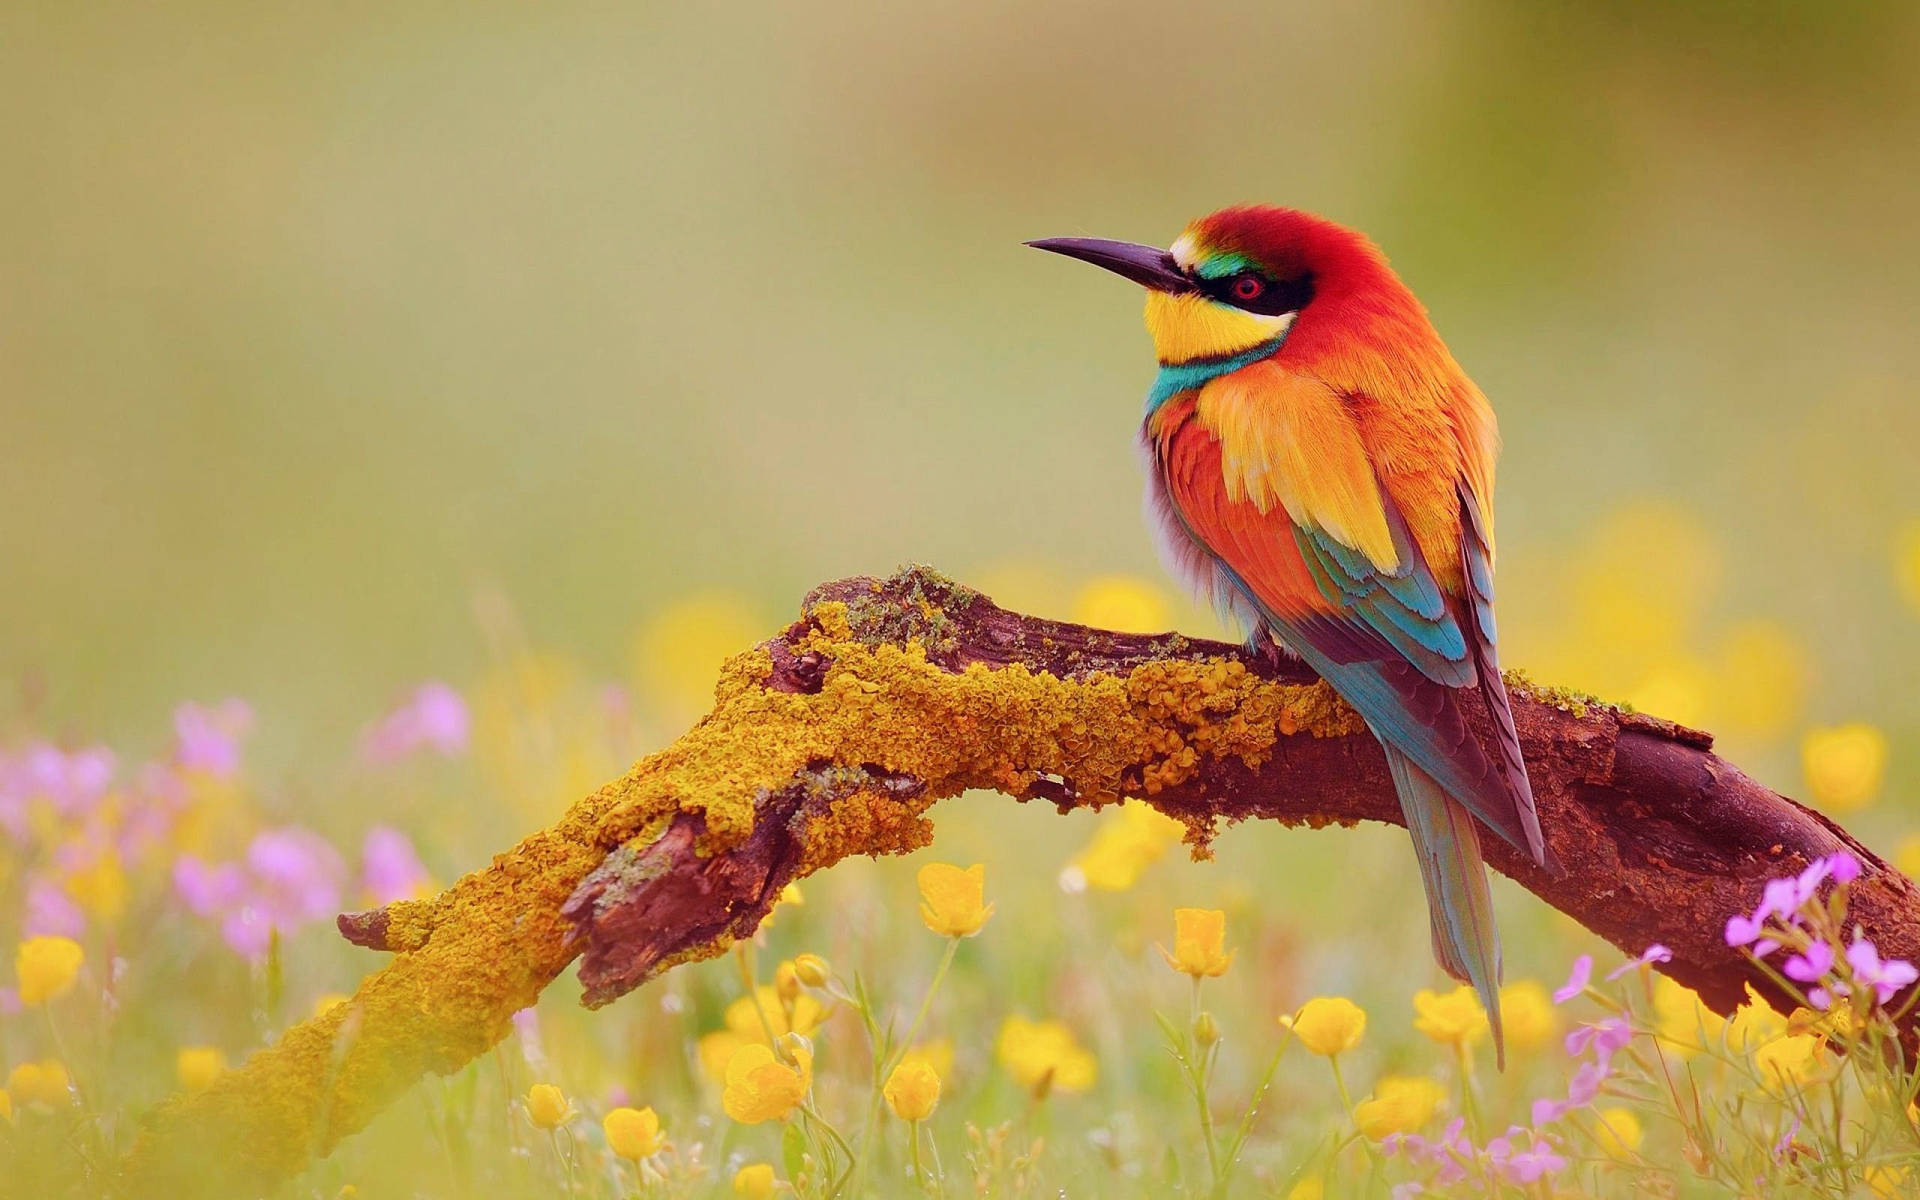 Vibrant Yellow Bird Embracing Nature